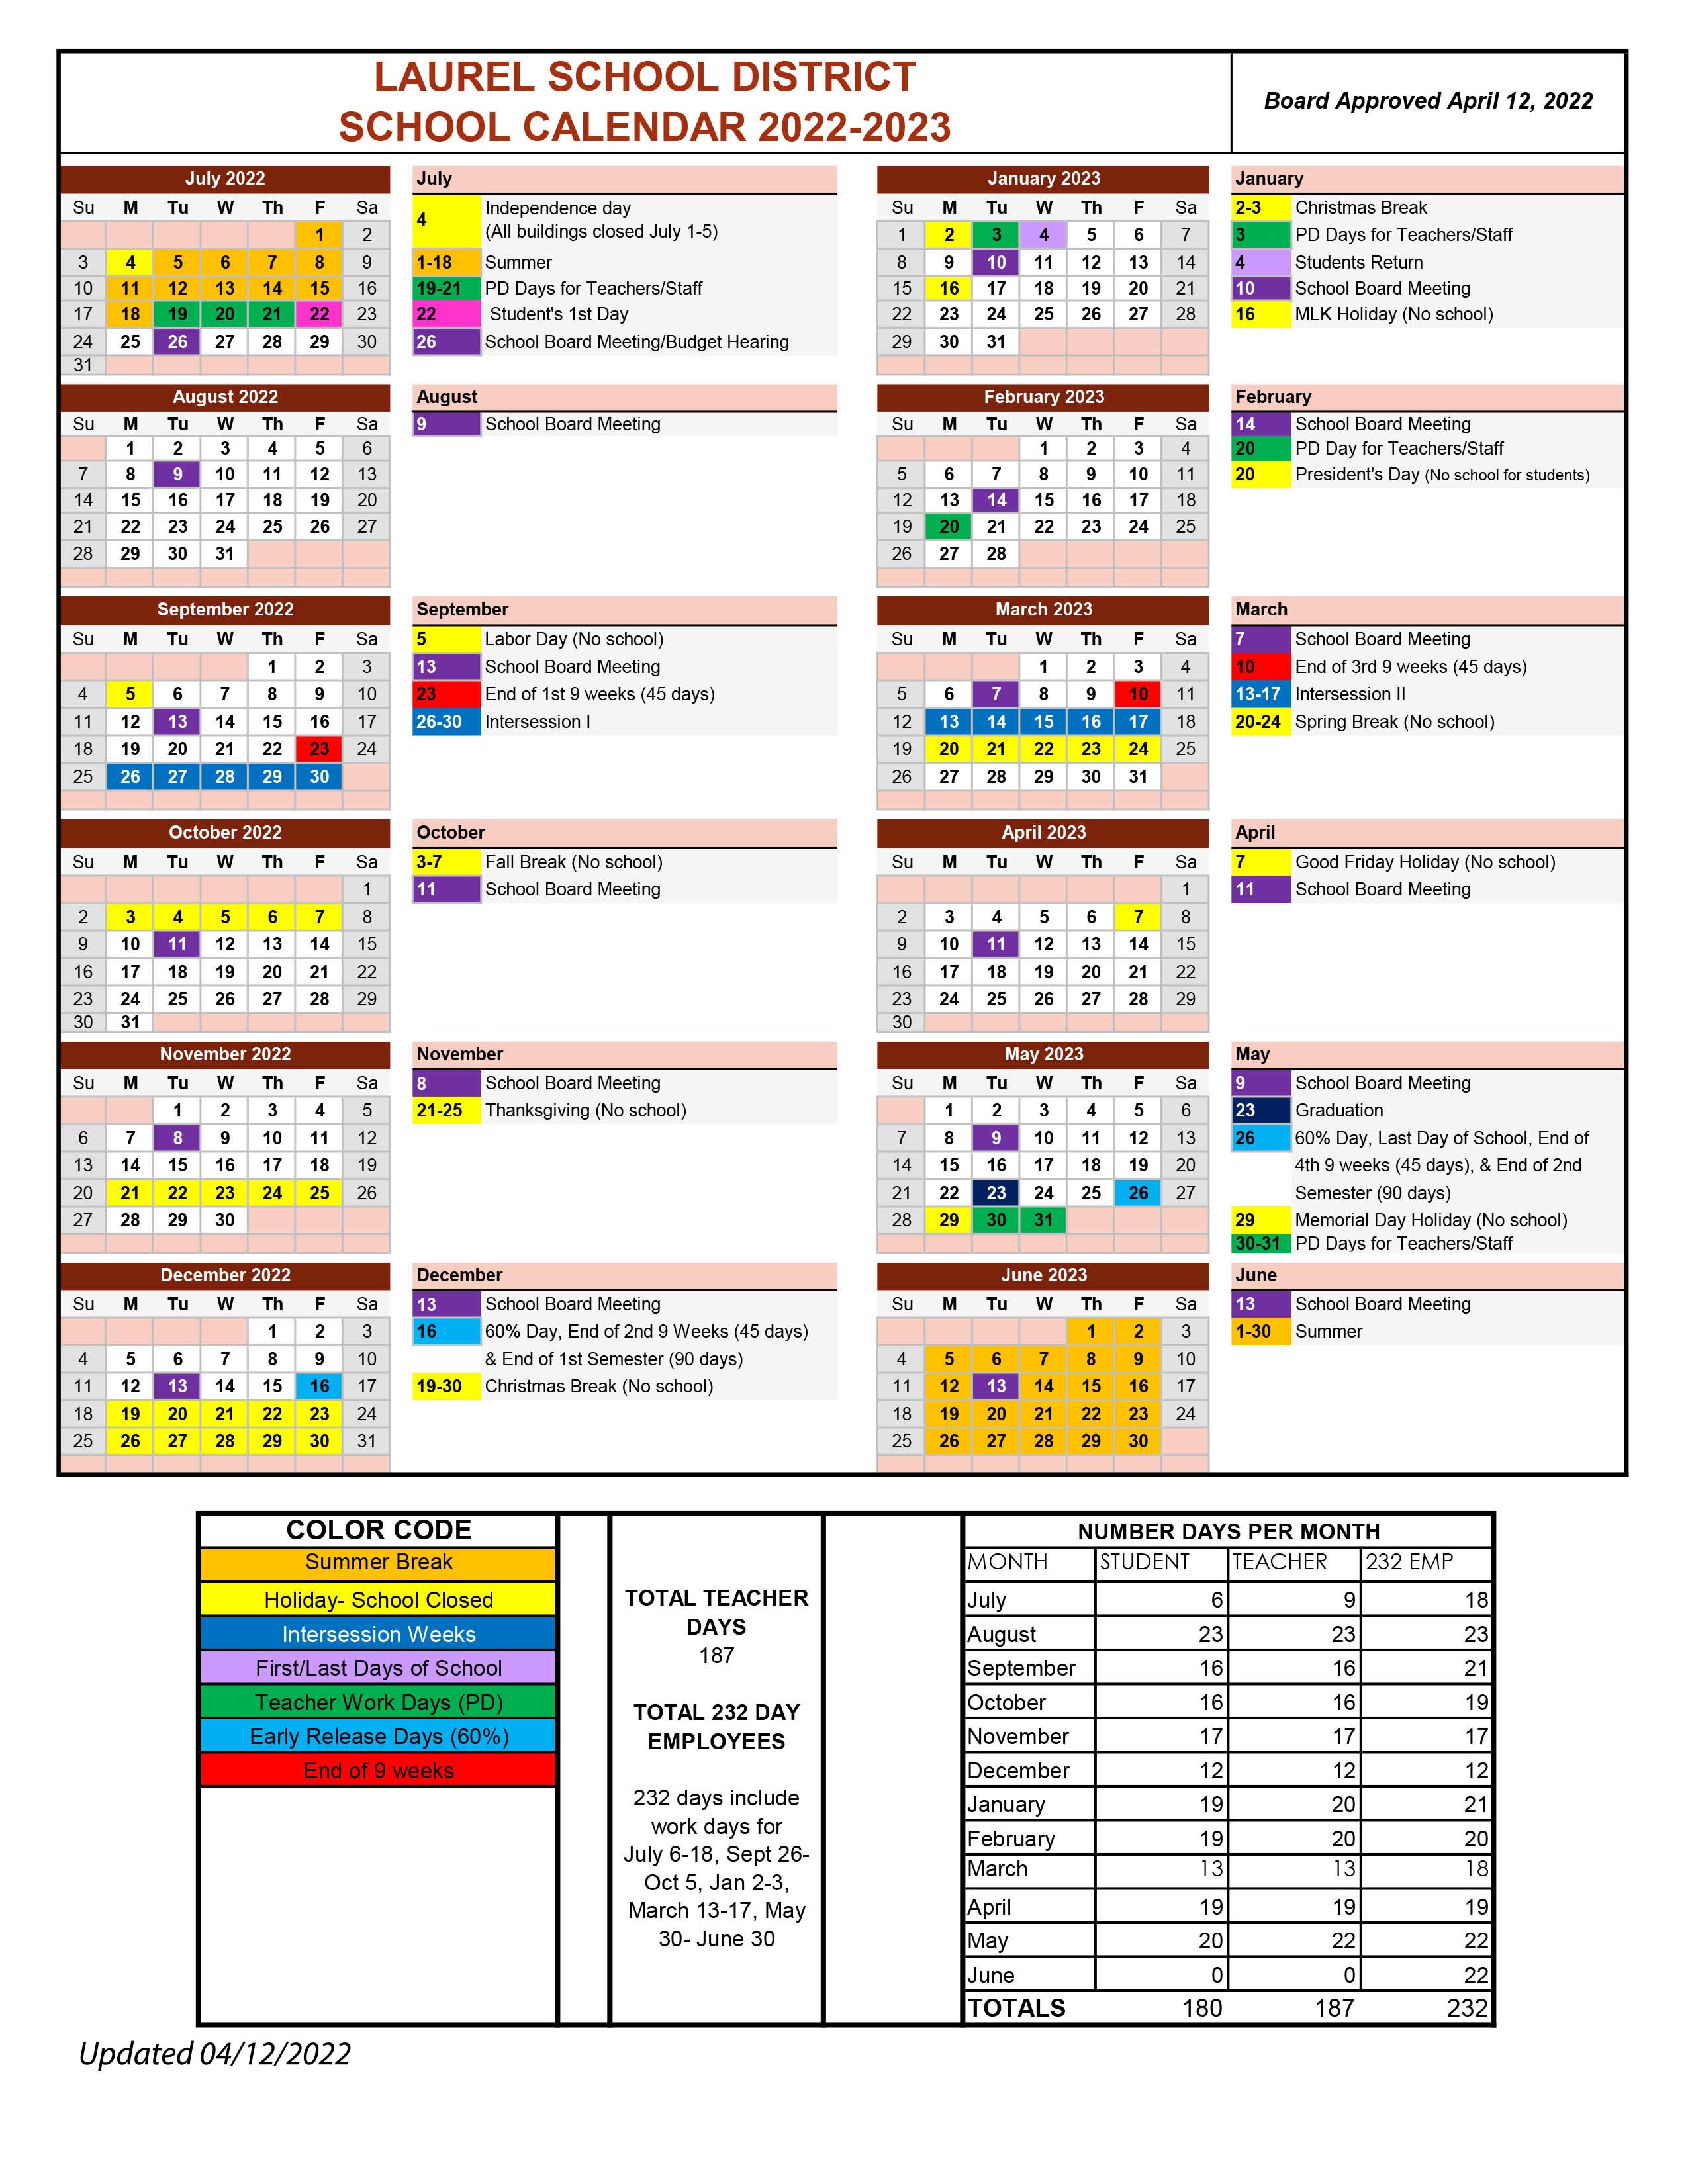 2022-2023-laurel-school-district-school-calendar-laurel-school-district